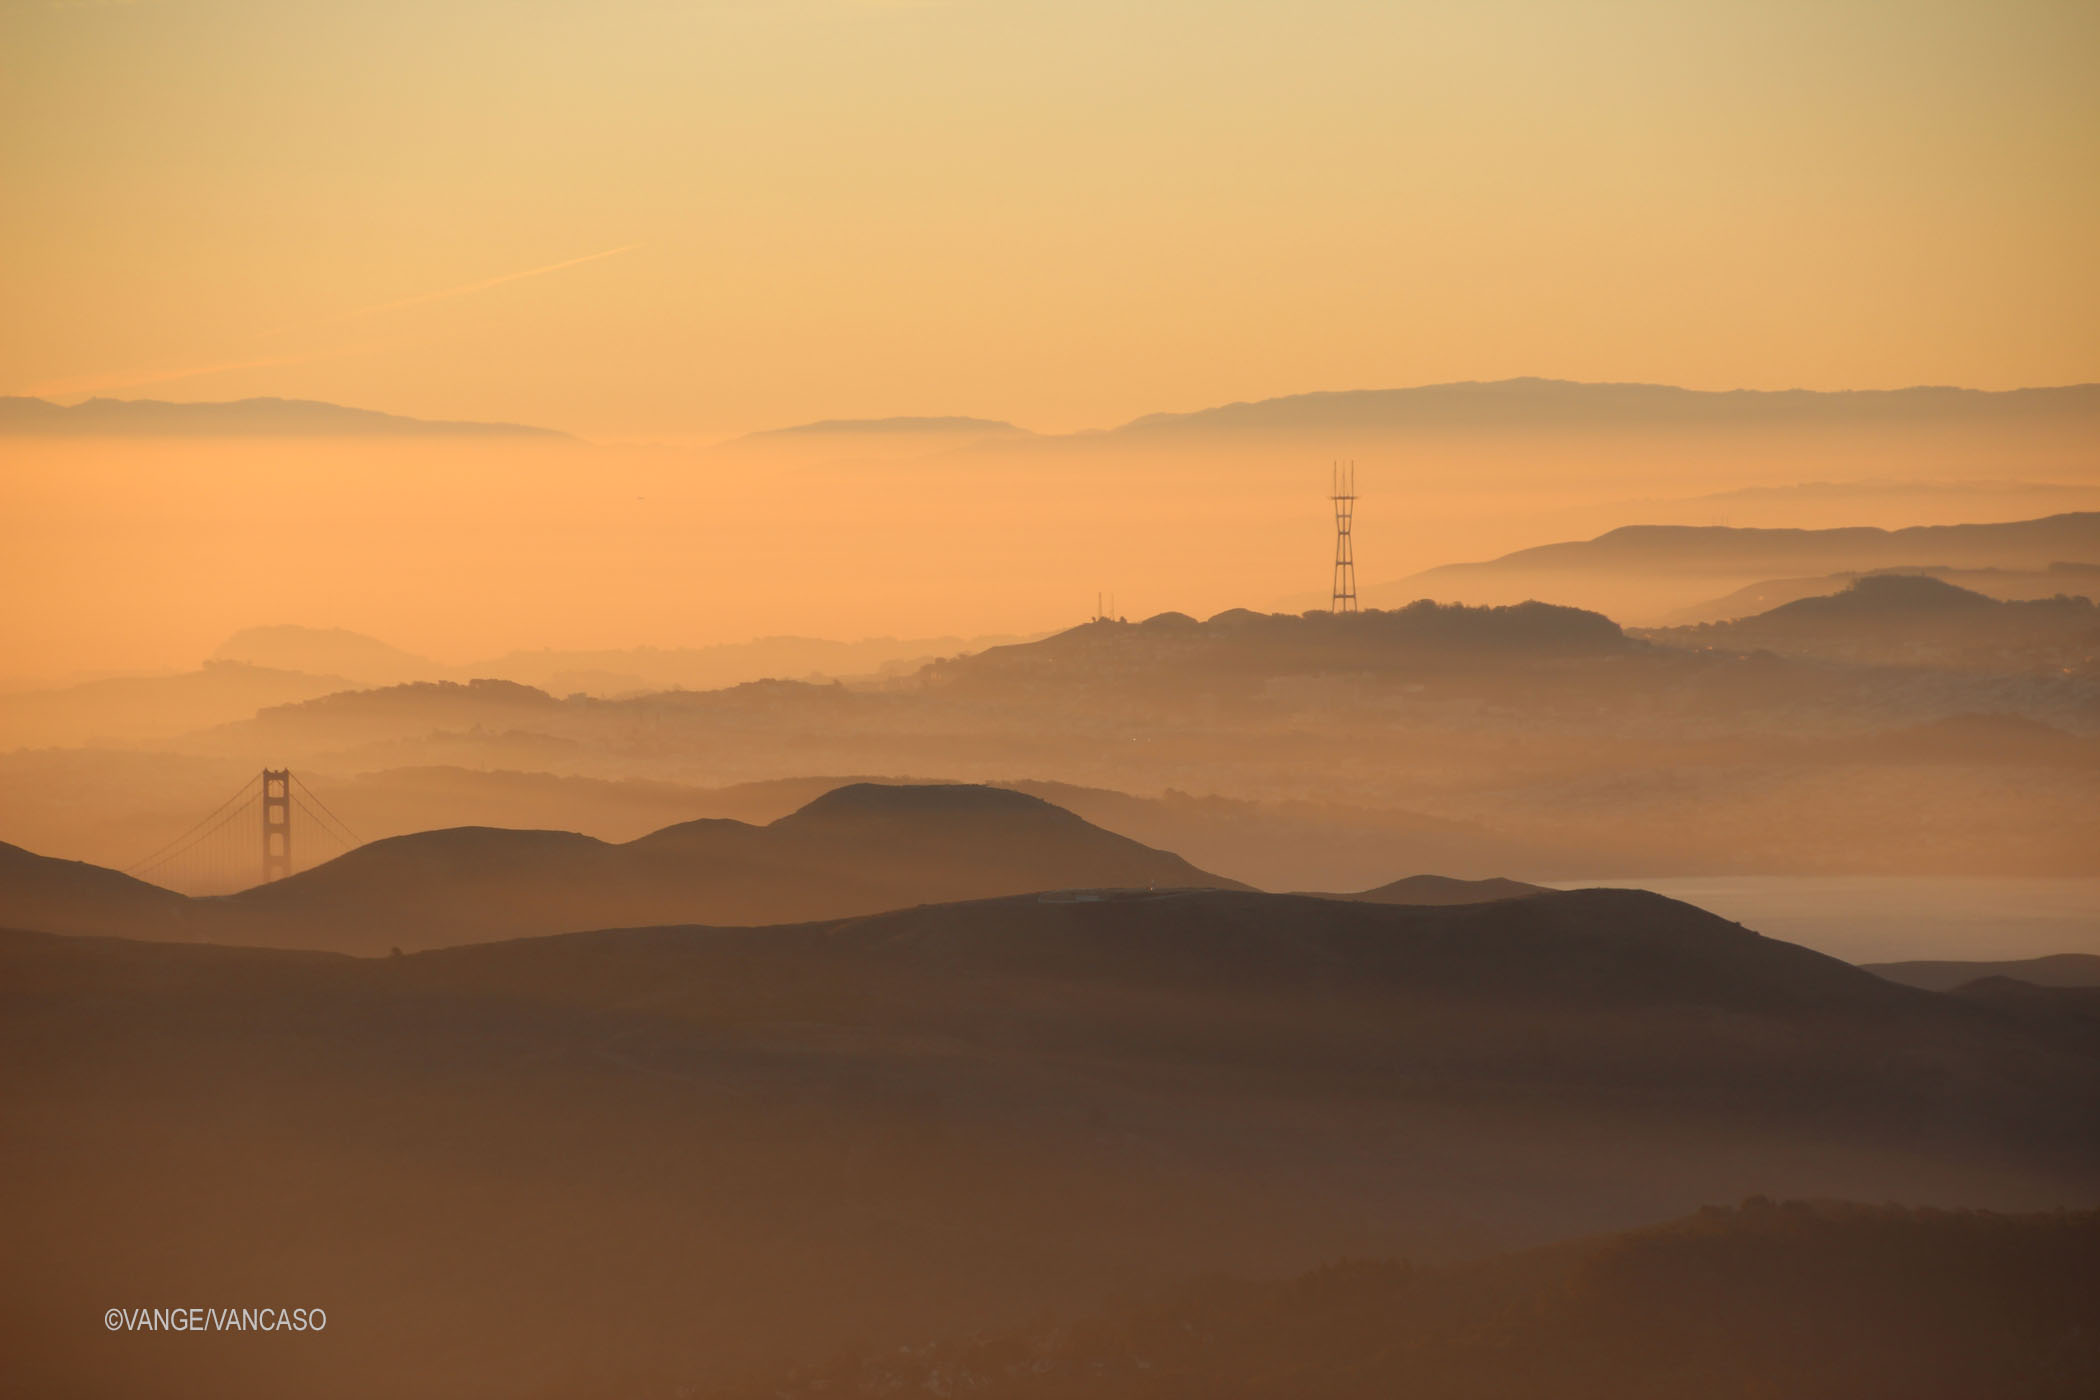 Haze over the San Francisco Bay